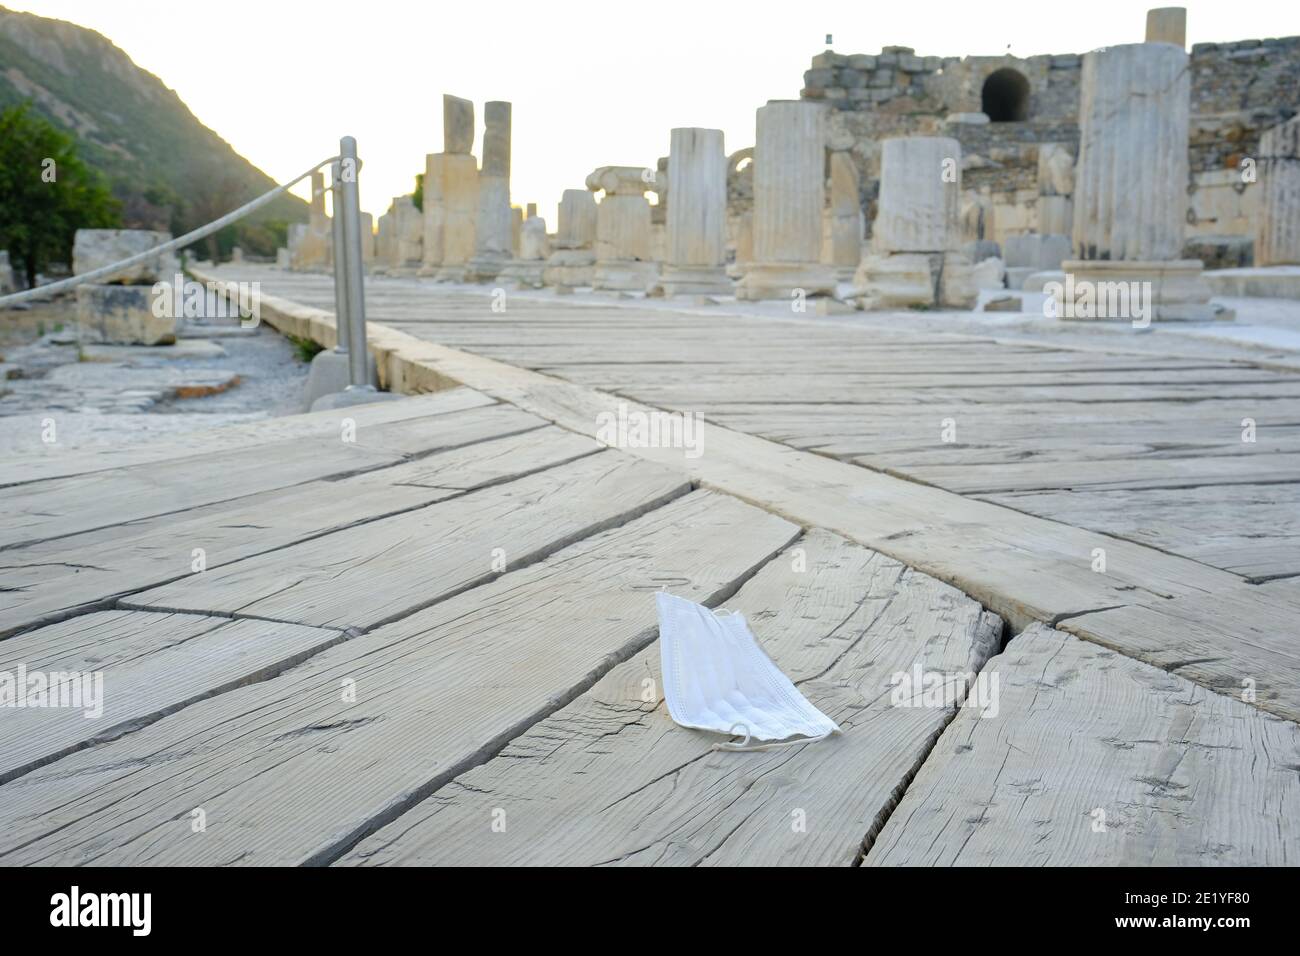 Ephèse ville antique et masque jeté sur le sol à la période pandémique à Izmir, Turquie - octobre 2020. Banque D'Images